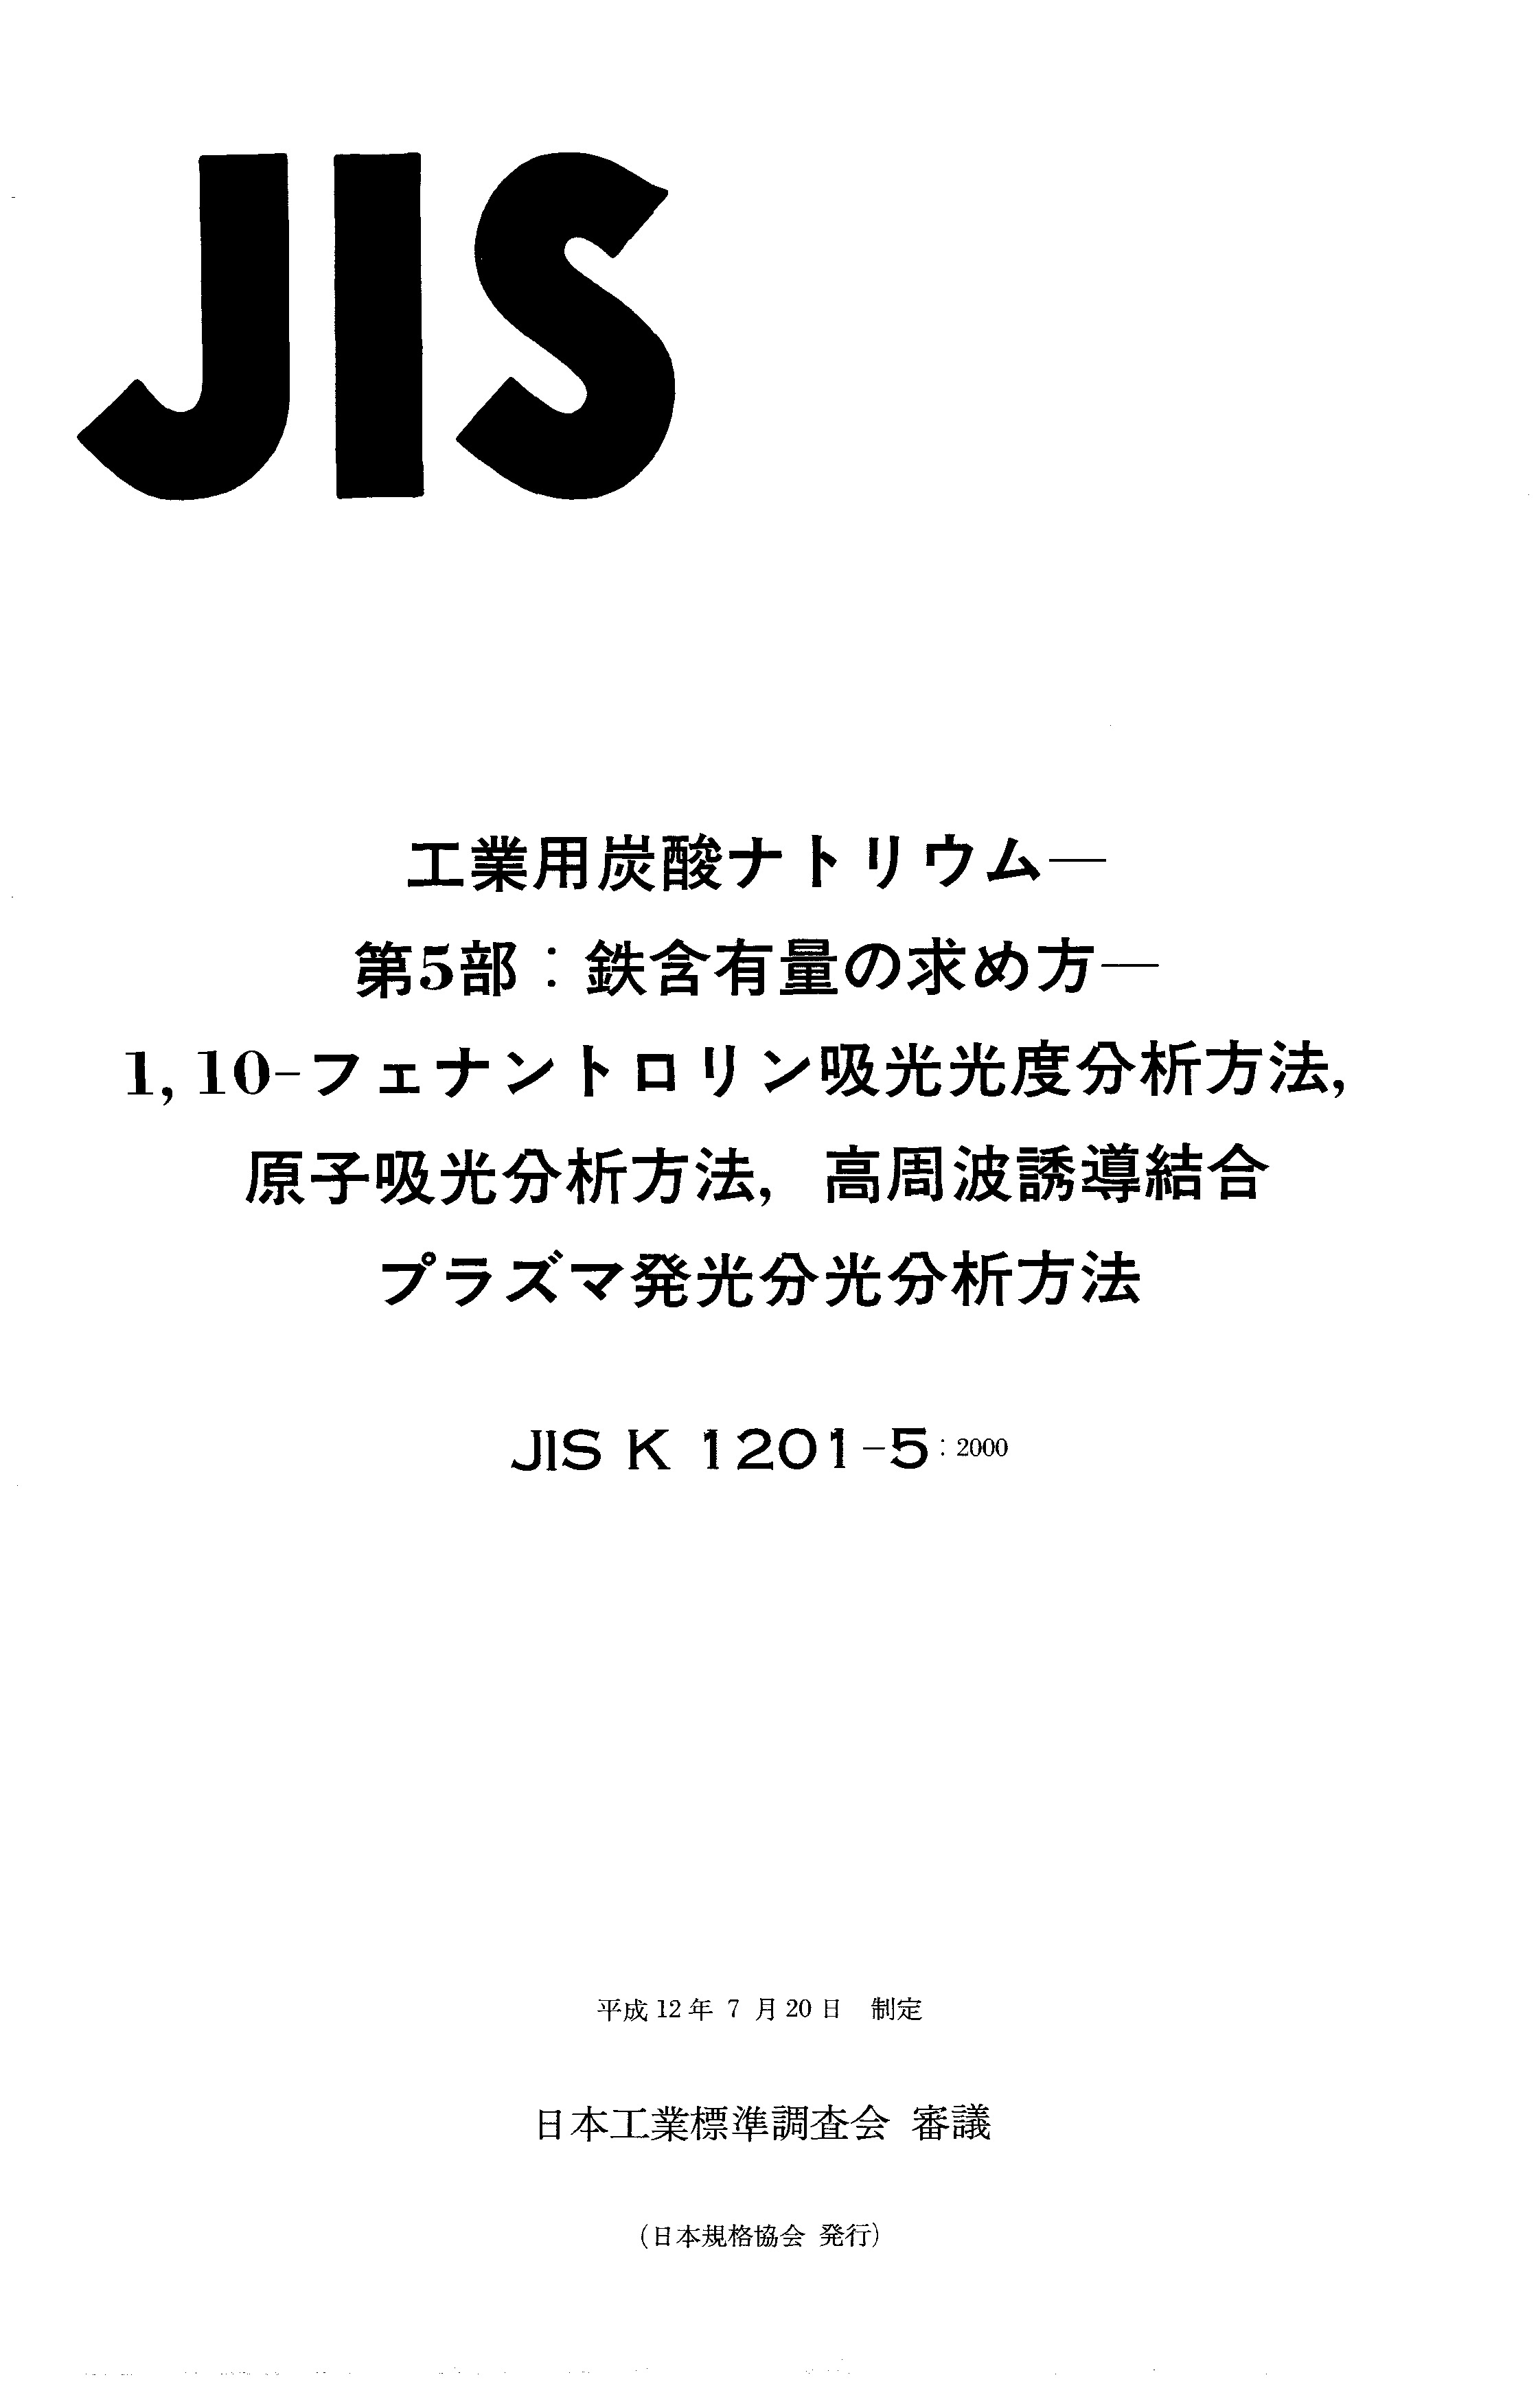 JIS K 1201-5:2000封面图